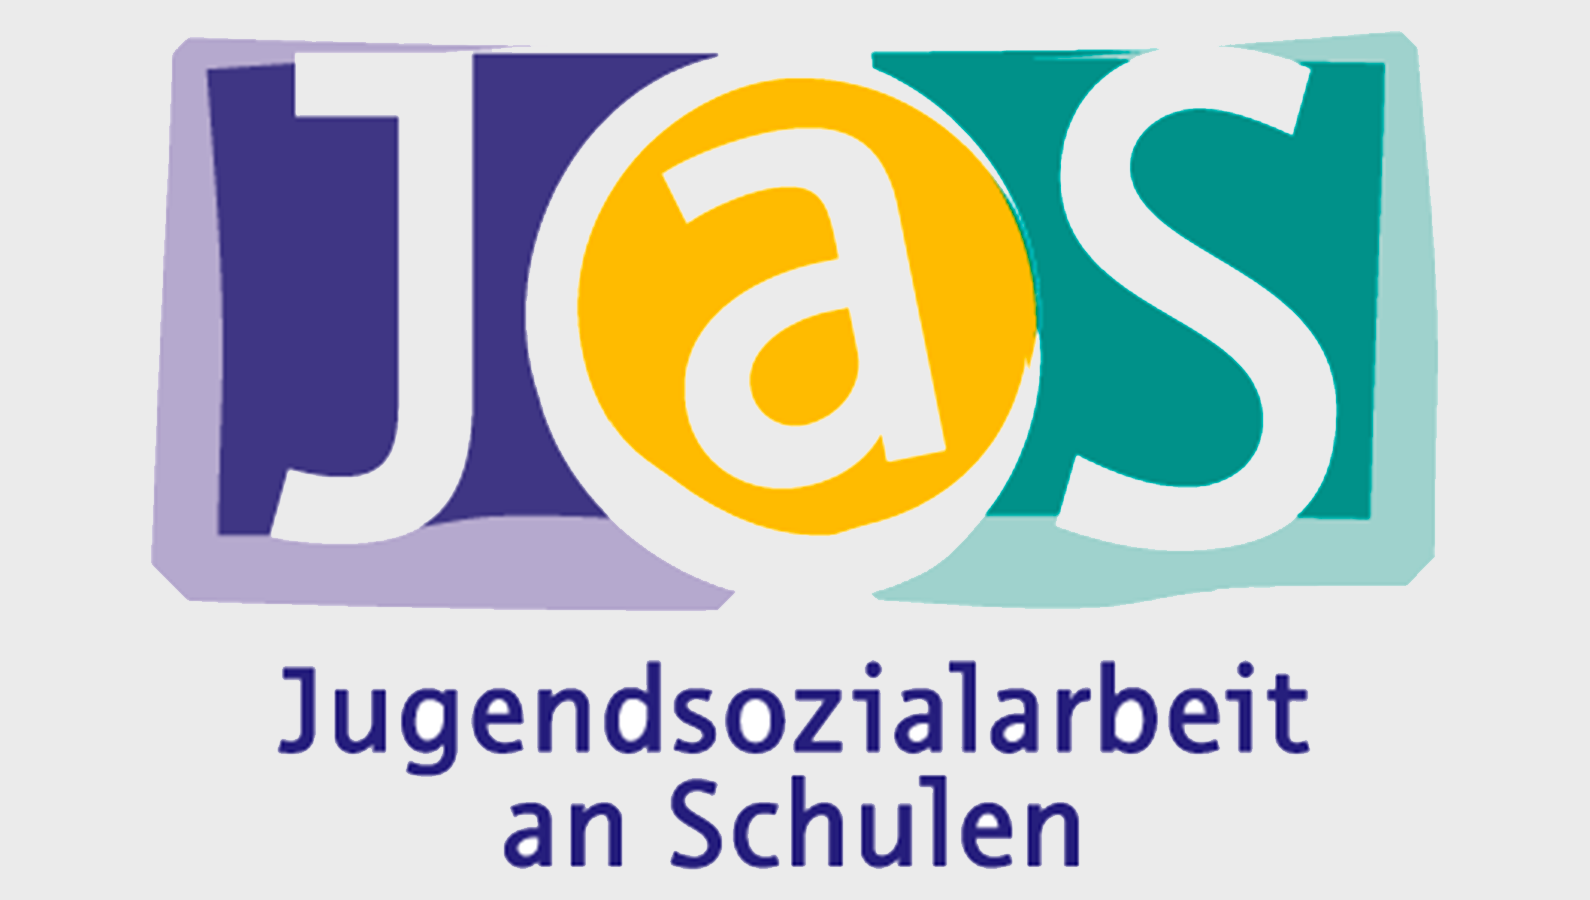 Logo: Jugendsozialarbeit an Schulen